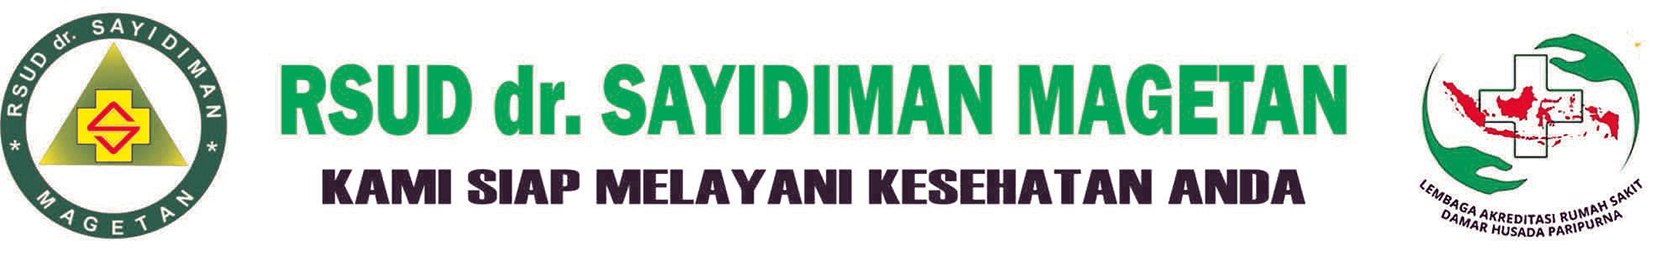 RSUD dr. Sayidiman Jl. Pahlawan No. 02 Magetan Jawa Timur 63318